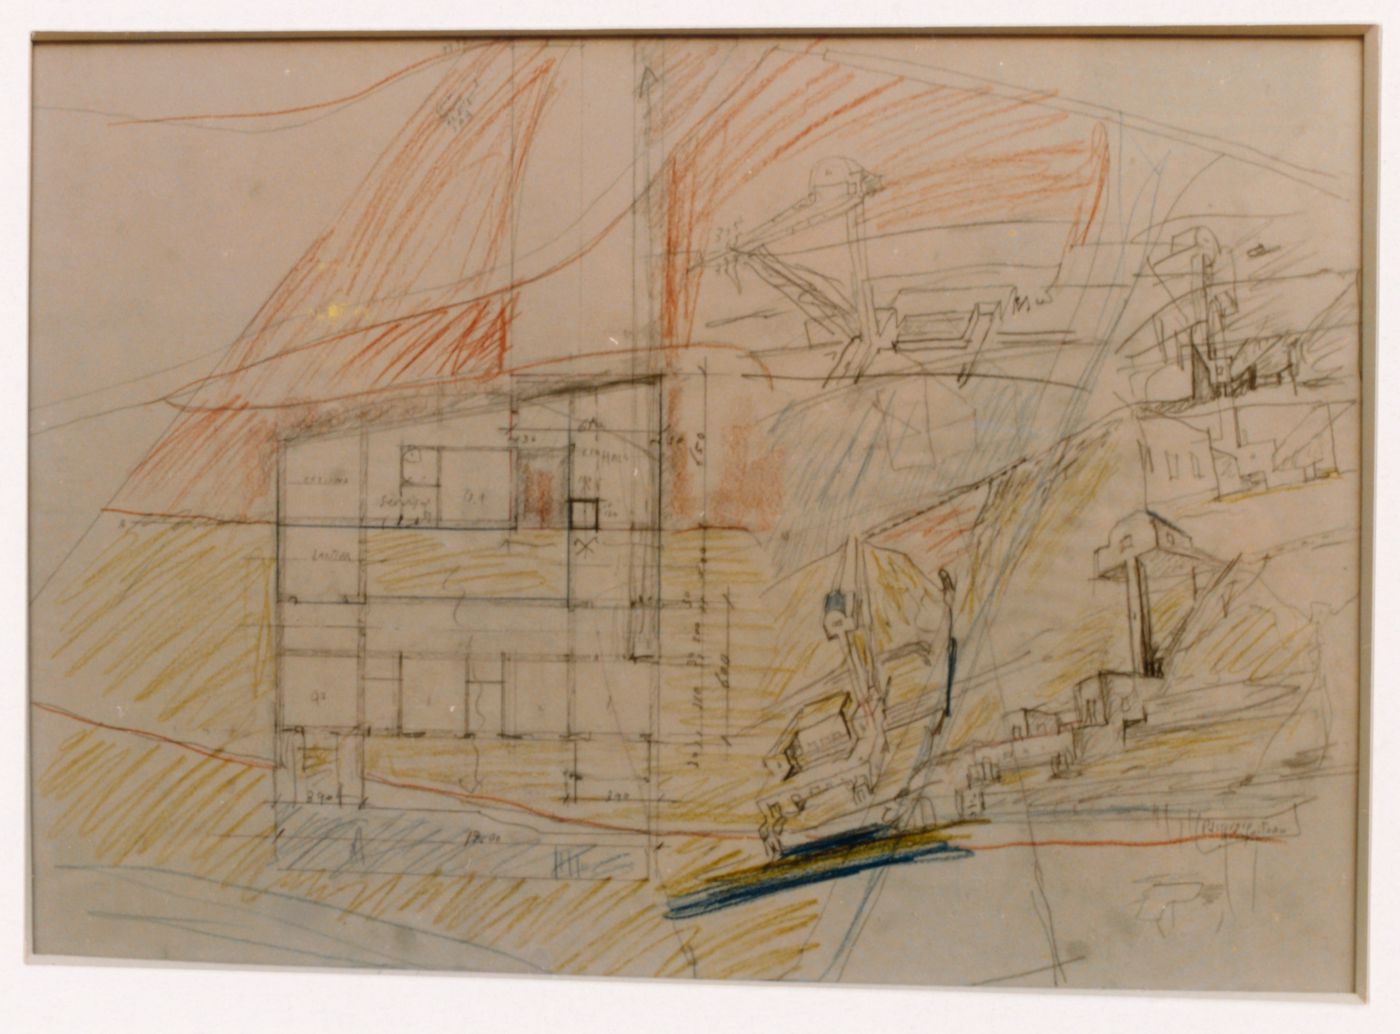 Photograph of a sketch plan and perspectives for Casa Mário Bahia [Mário Bahia house], Gondomar, Portugal